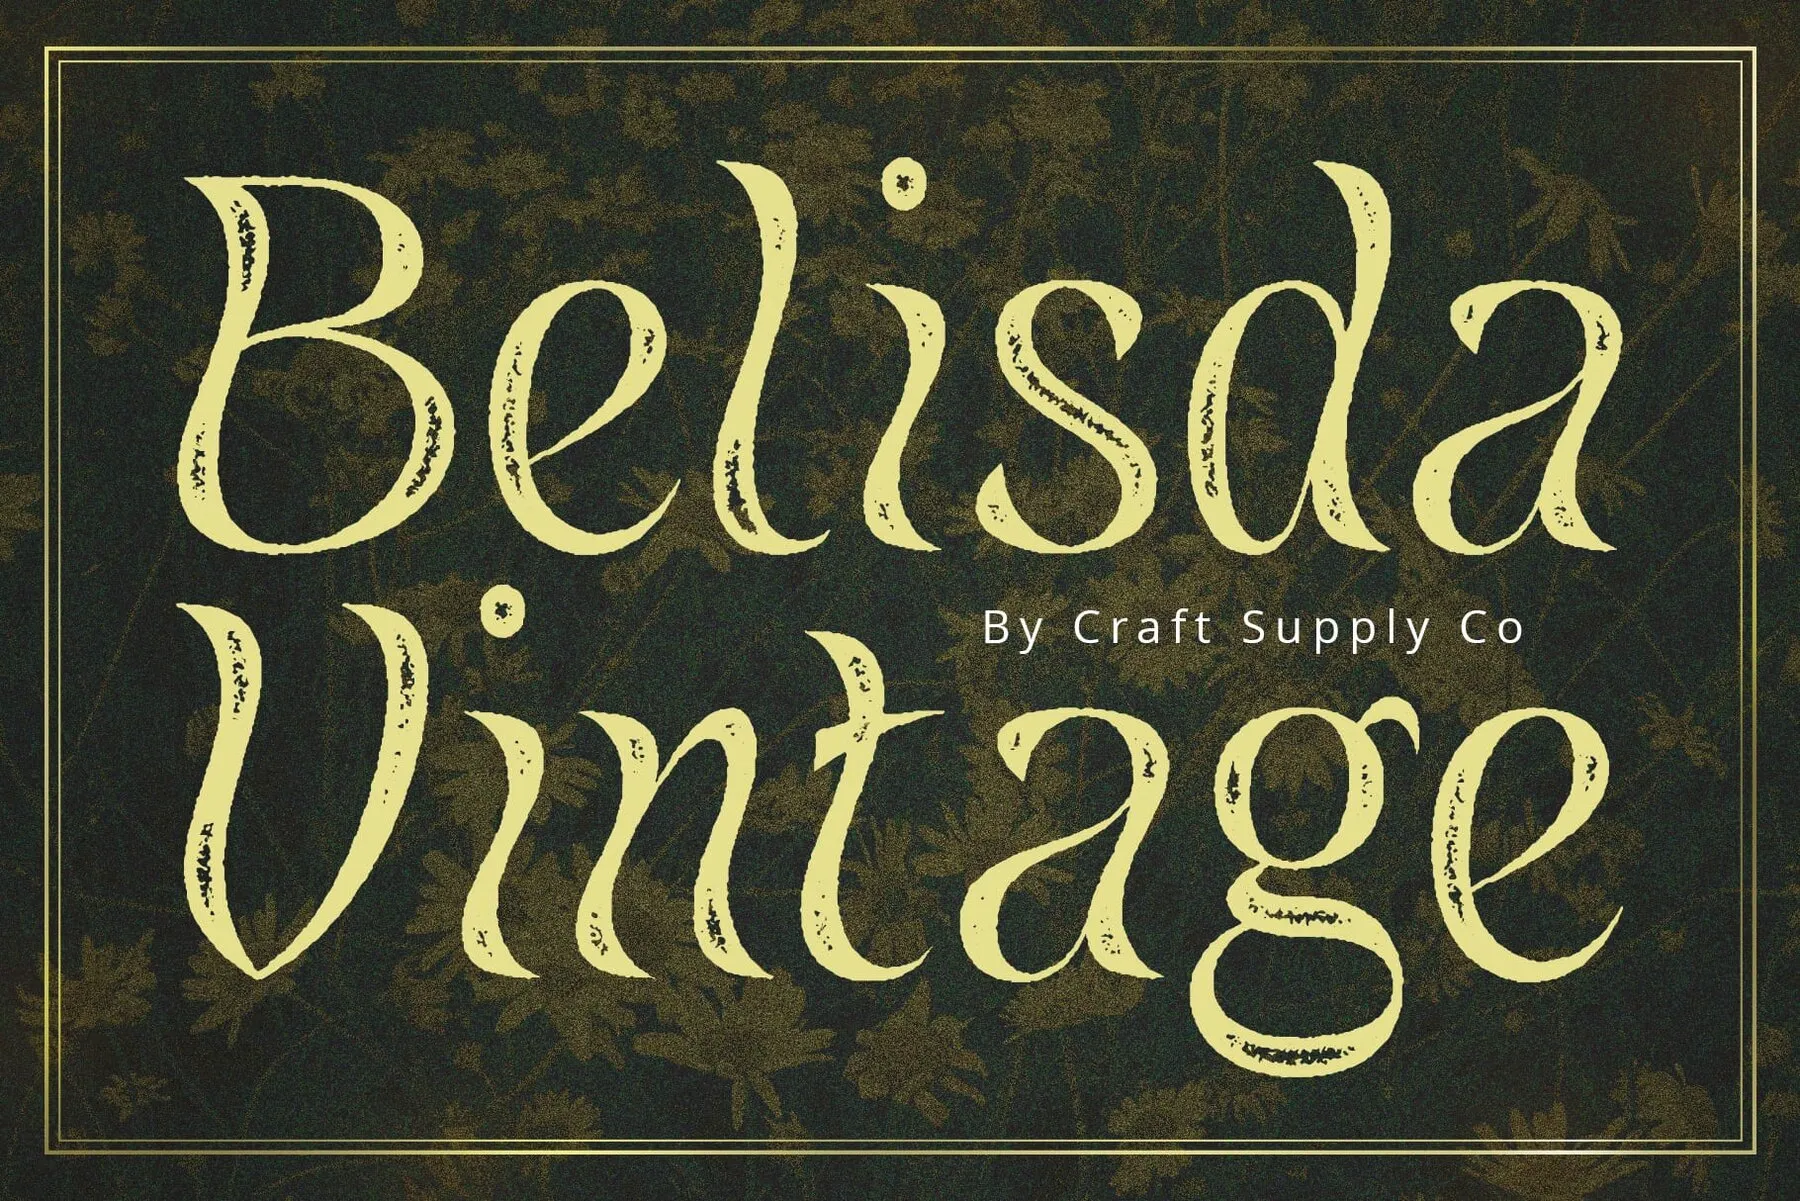 Belisda Vintage